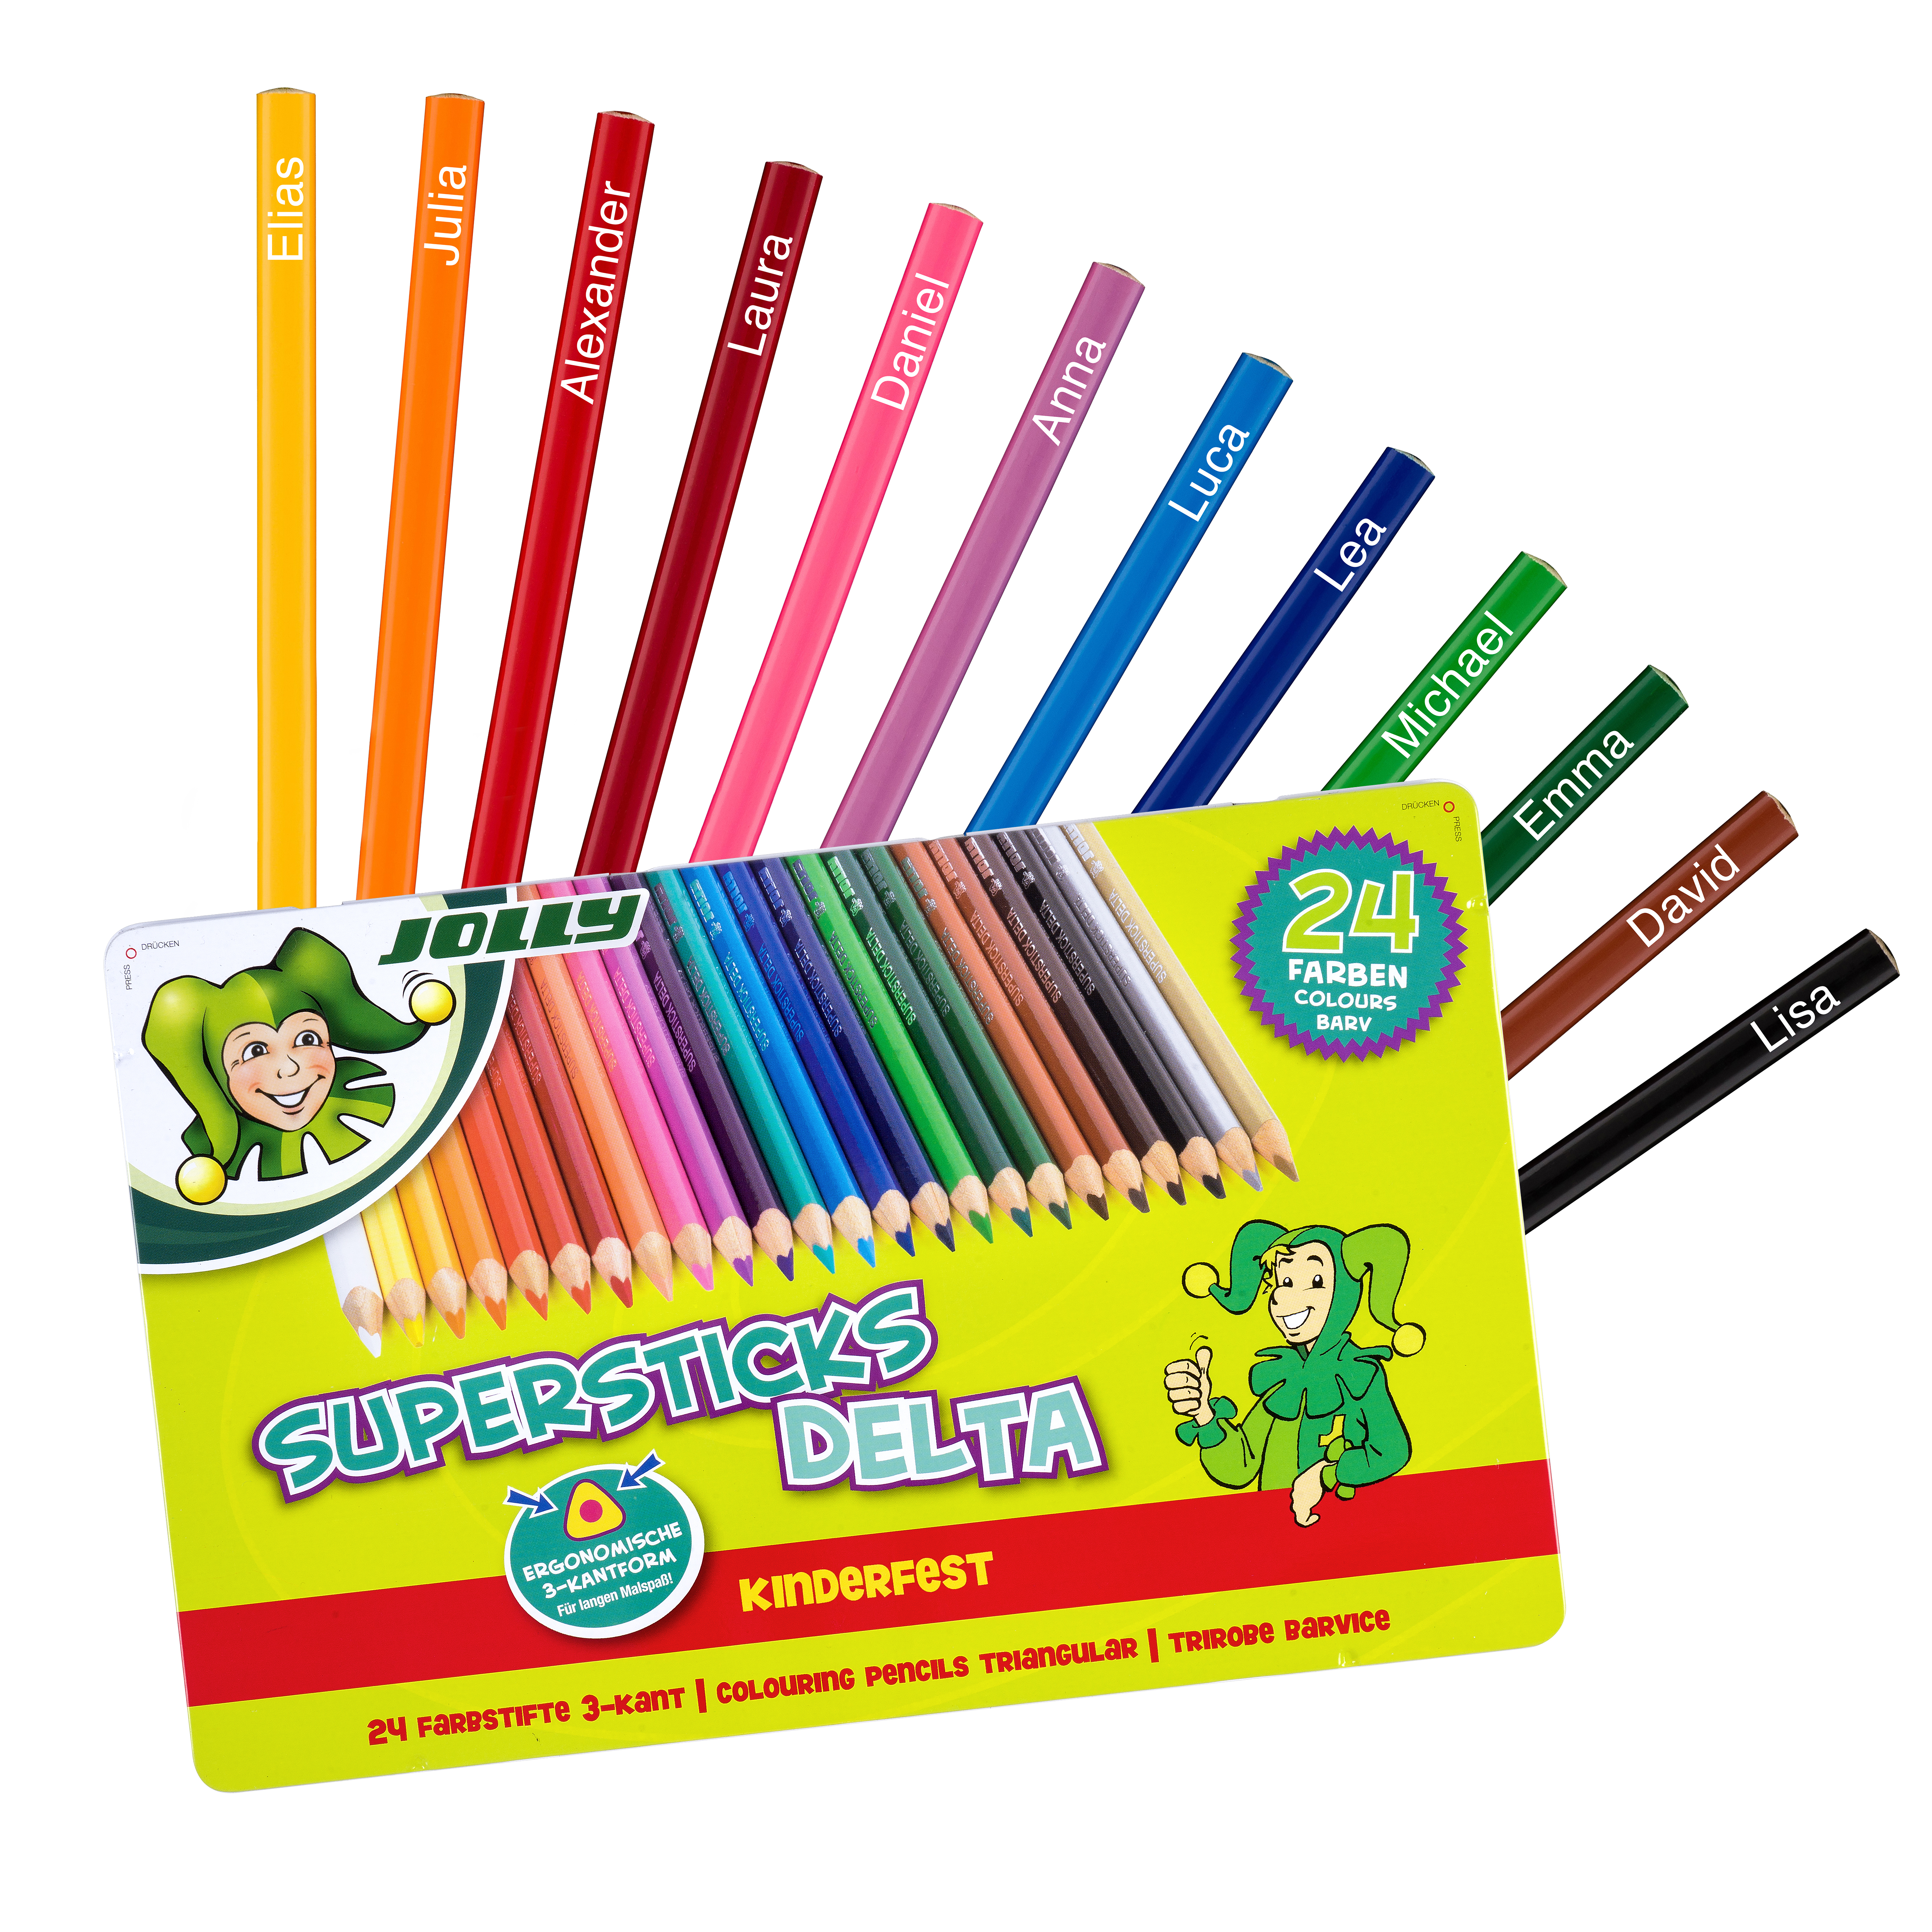 JOLLY Buntstifte Supersticks Delta kinderfest 24er personalisierbar mehrfarbig